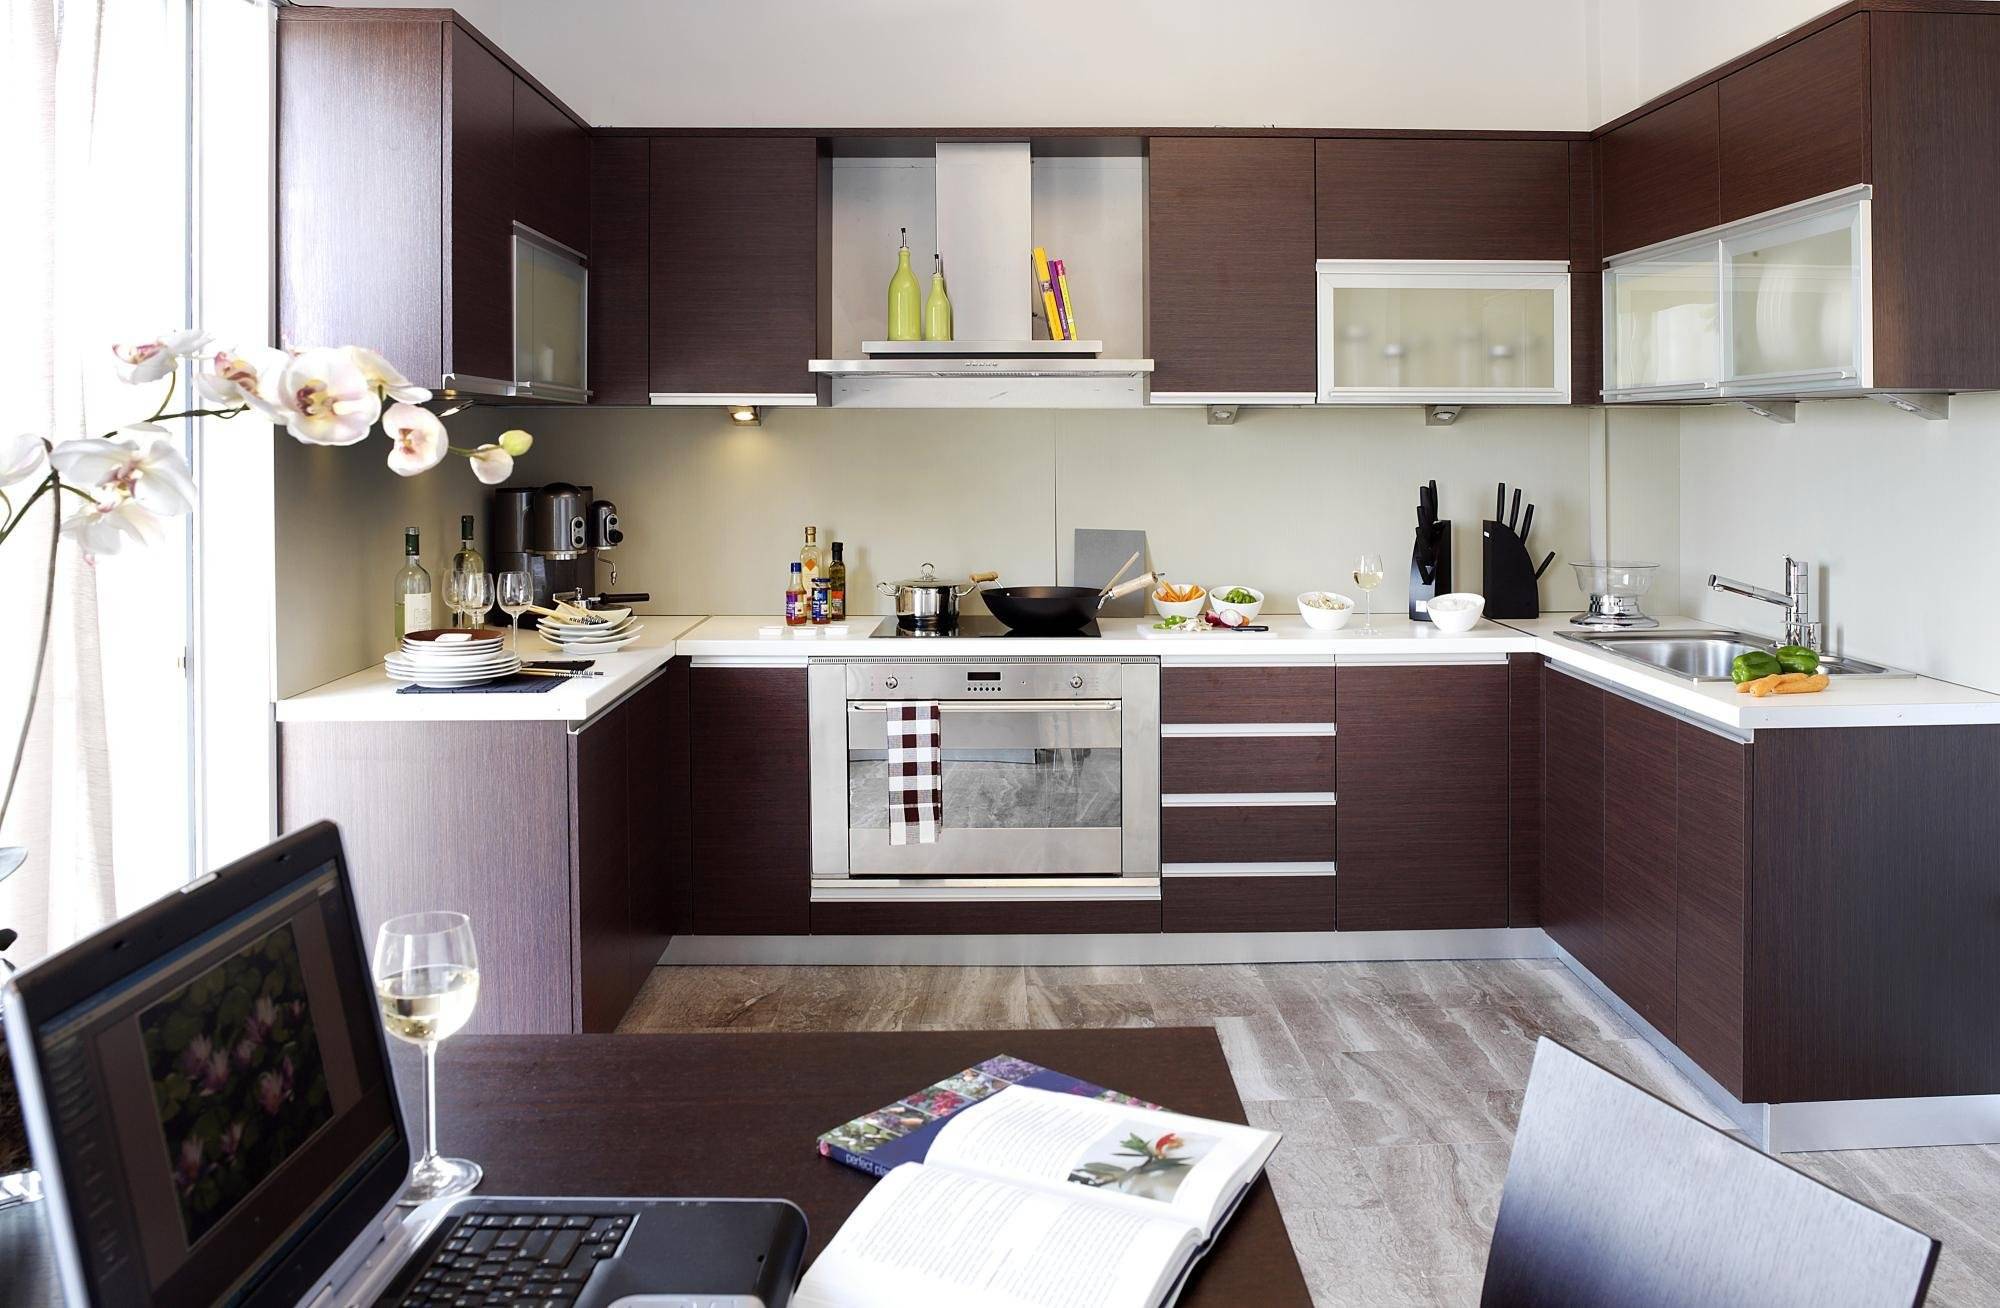 Угловая кухня: фото идей дизайна и лучшие интерьерные решения по использованию